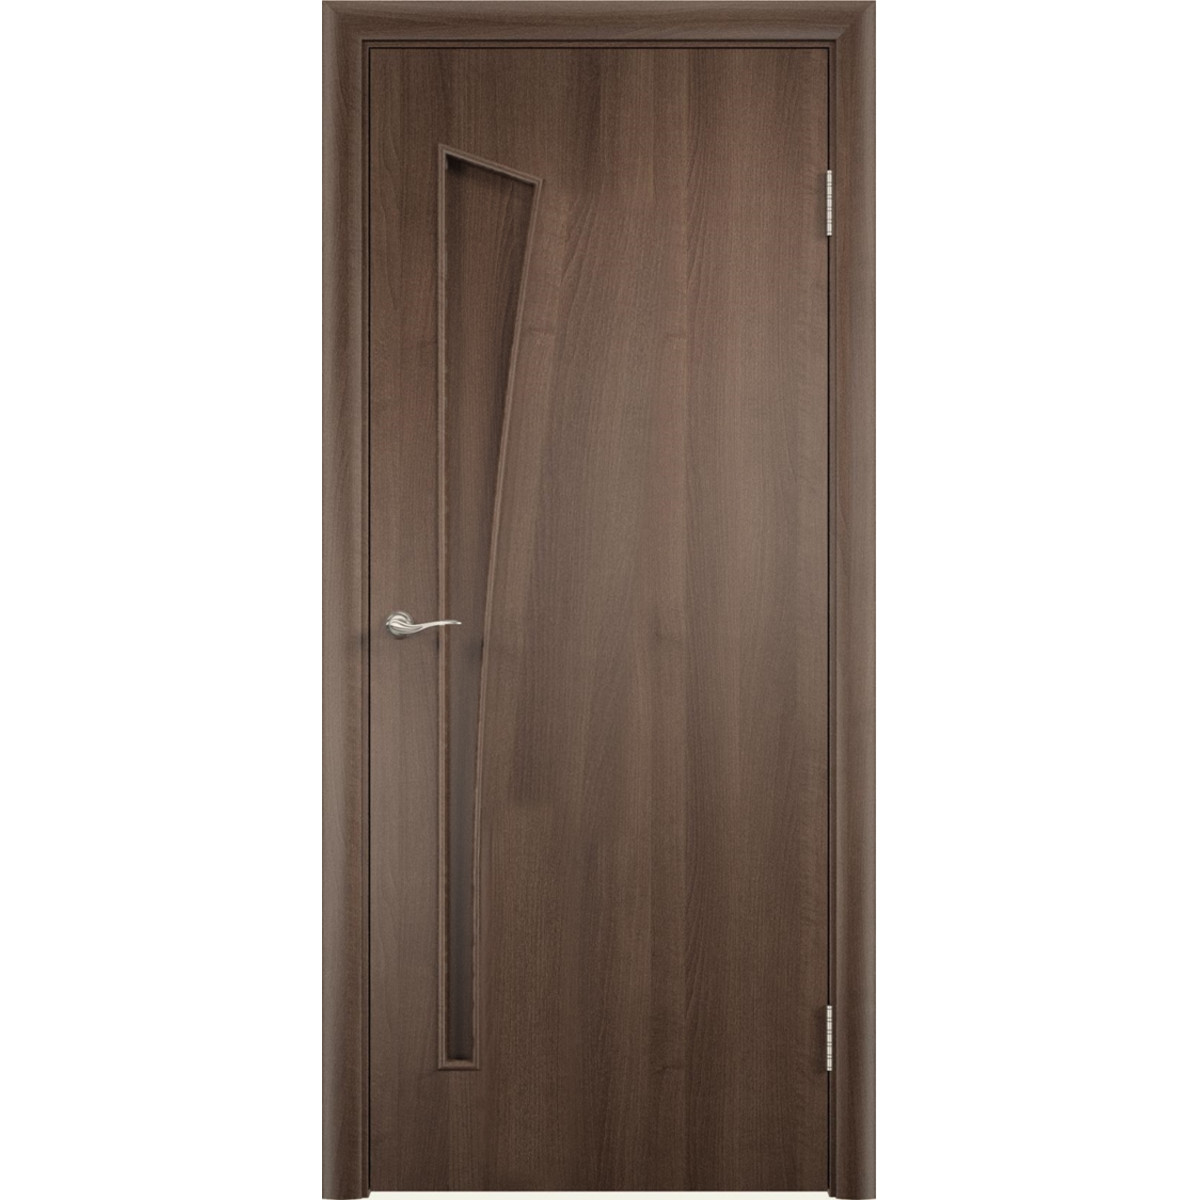 Дверь межкомнатная глухая без замка и петель в комплекте Белеза 90x200 см ламинация цвет дуб тёрнер коричневый